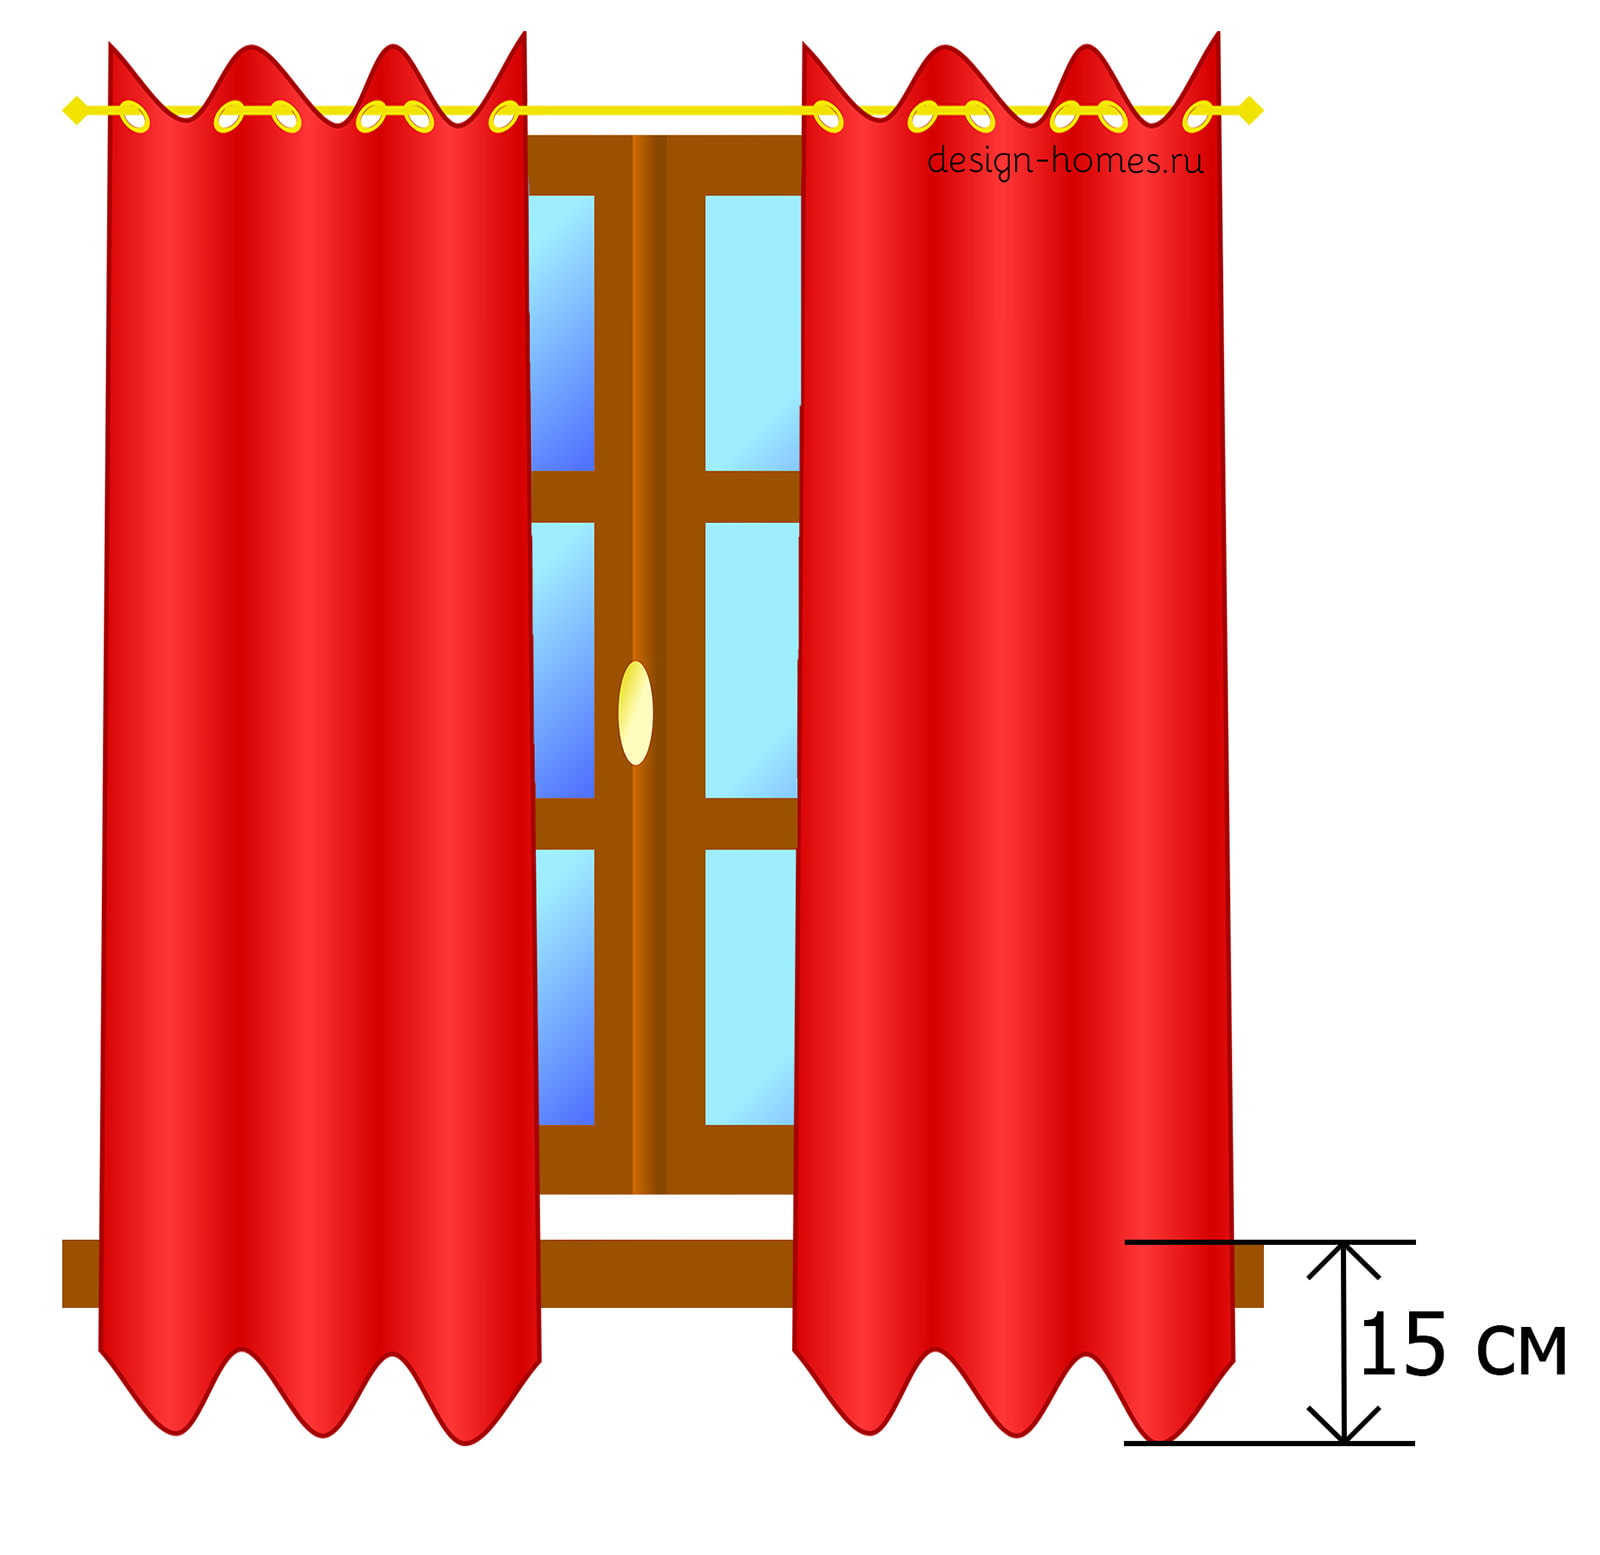 Как рассчитать расход ткани на шторы